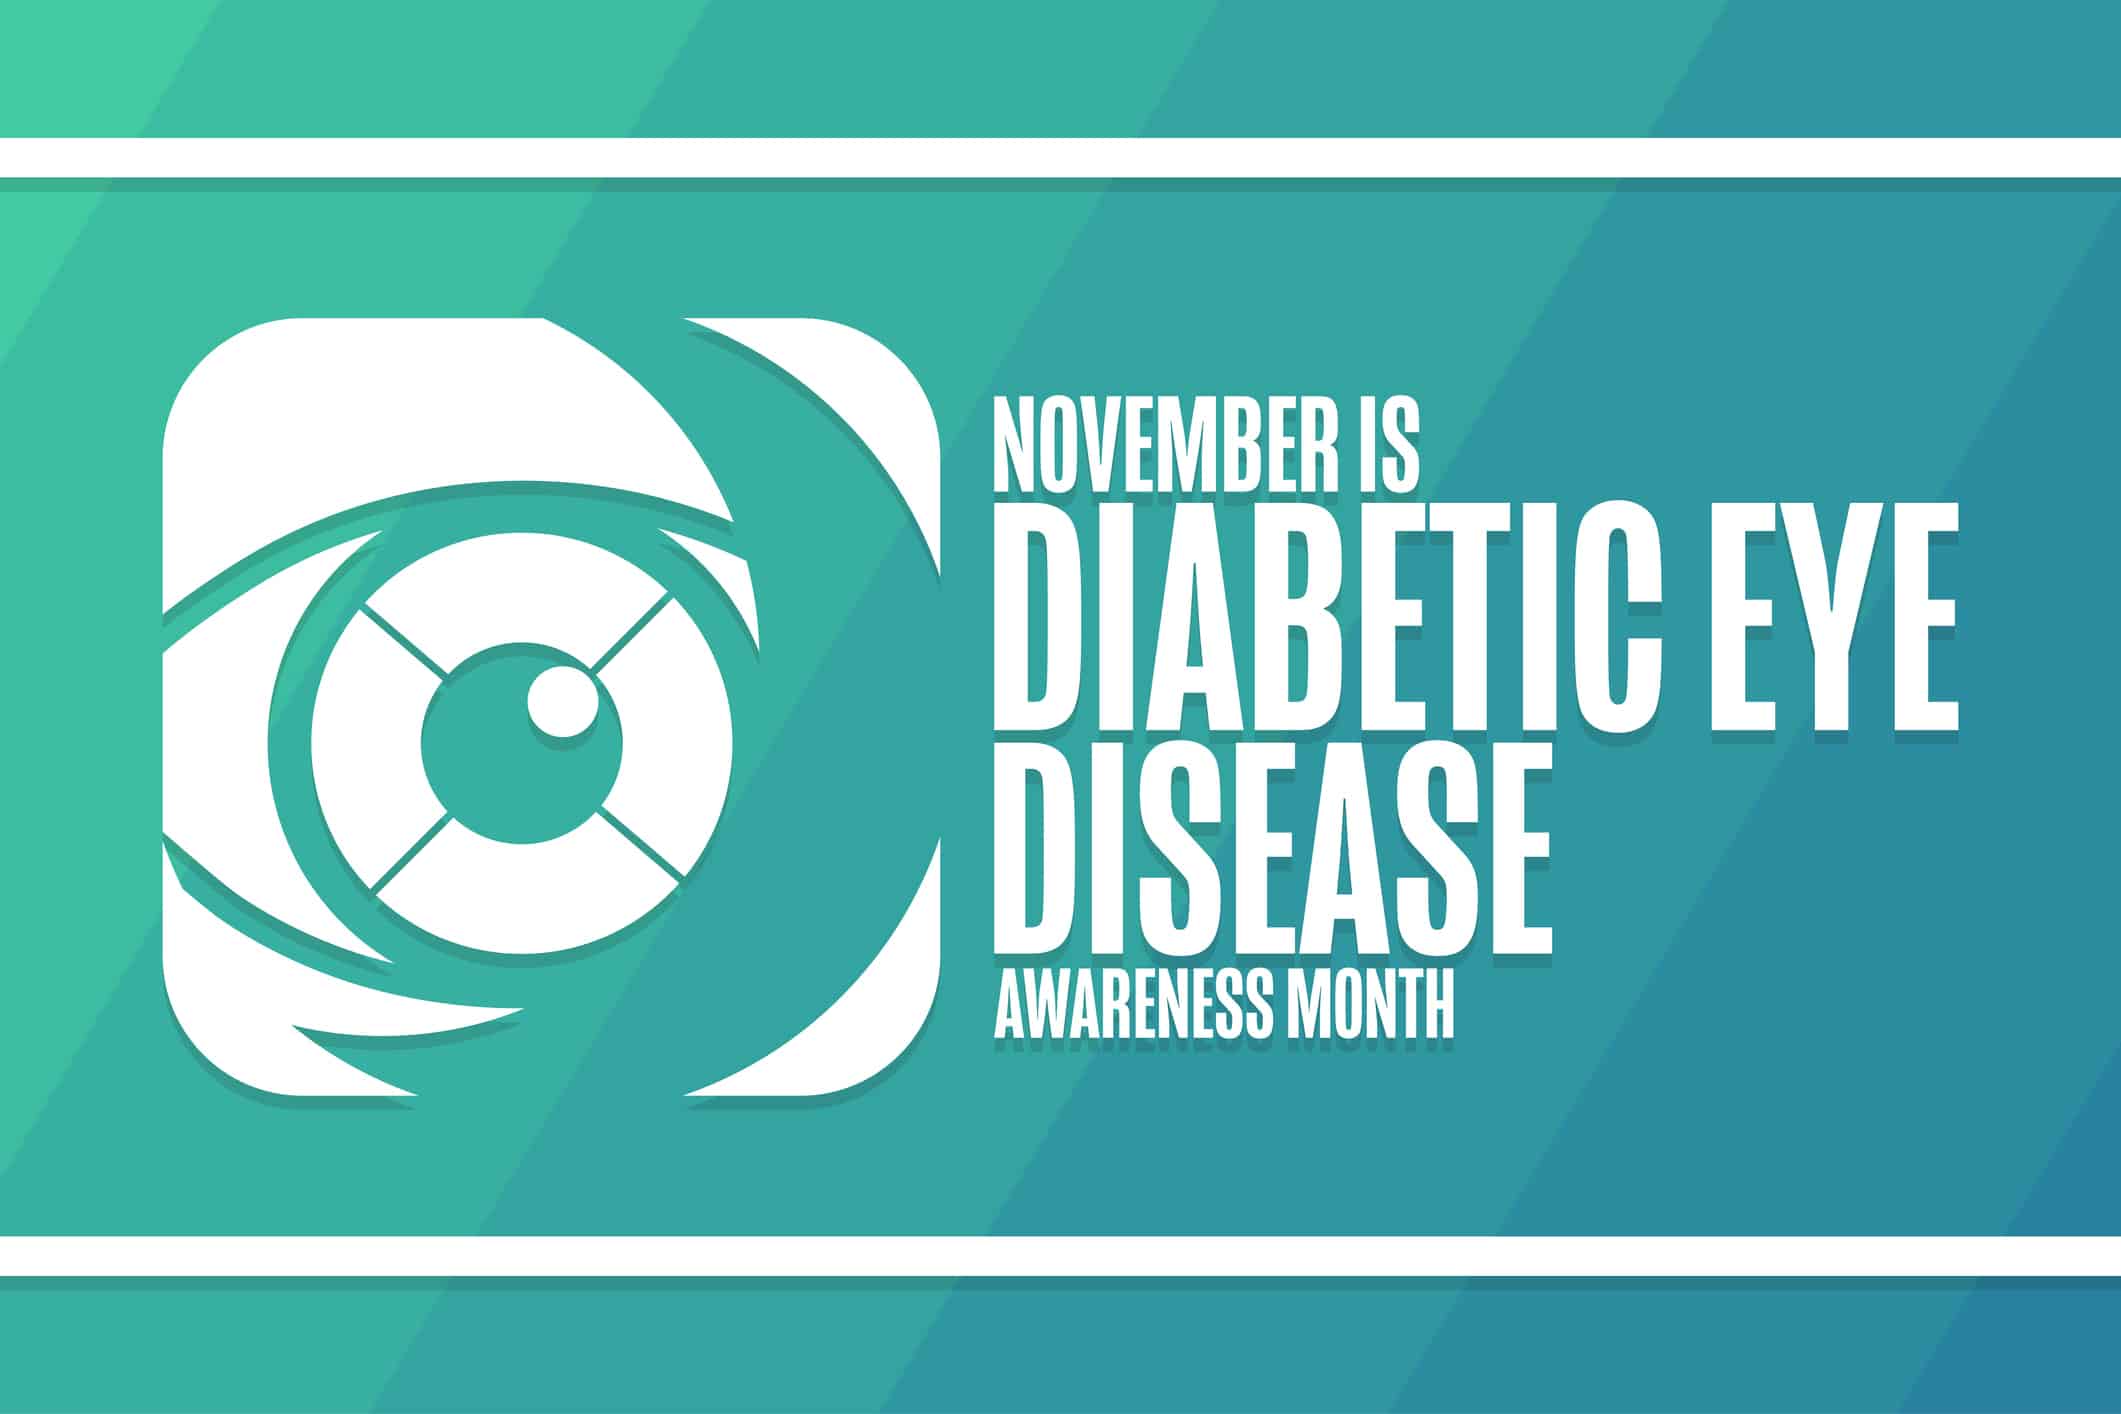 diabetic rertinopathy awareness graphic